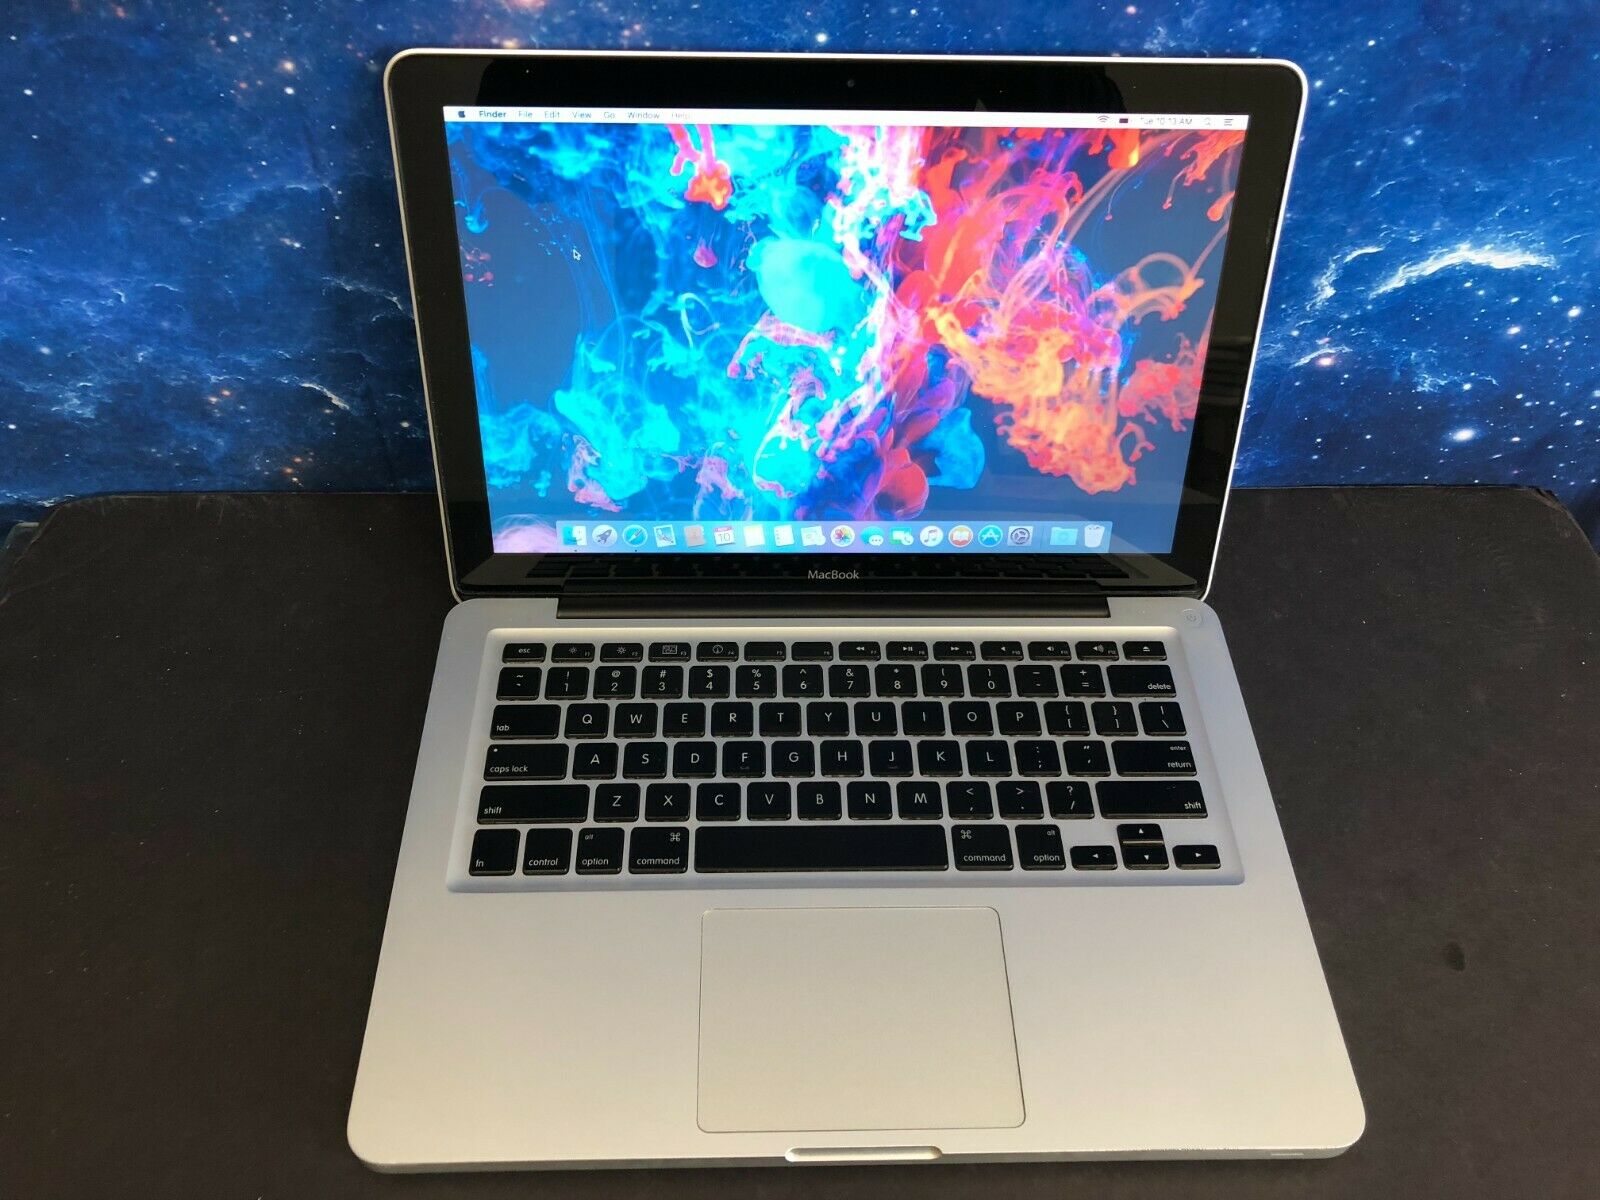 Apple Macbook Pro 13" Laptop | I5 8gb + 500gb Hd | Mac Os | 2 Yr Warranty